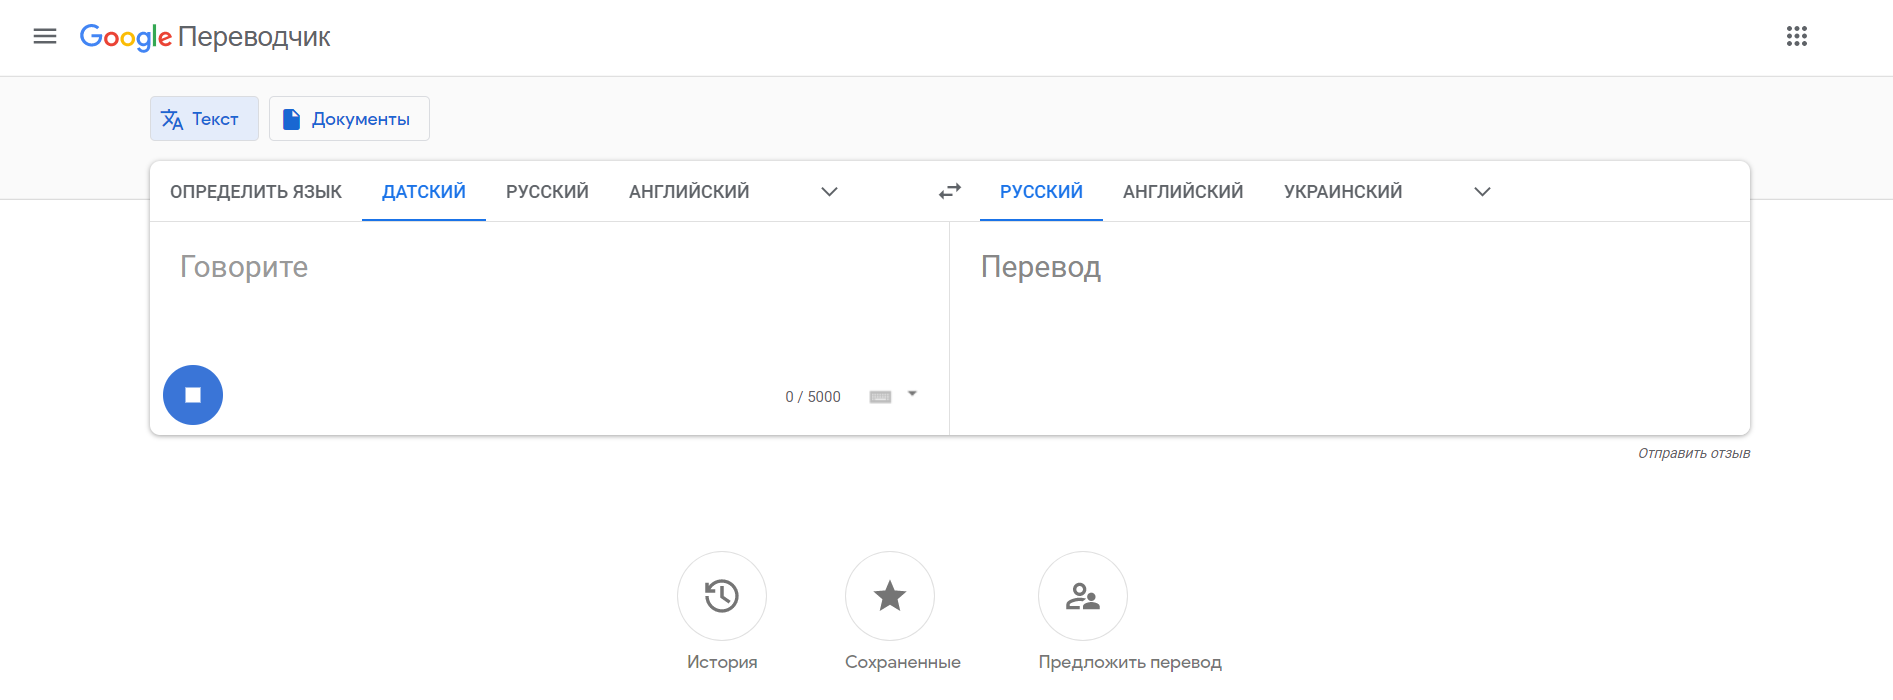 Интерфейс сервиса Google Translate